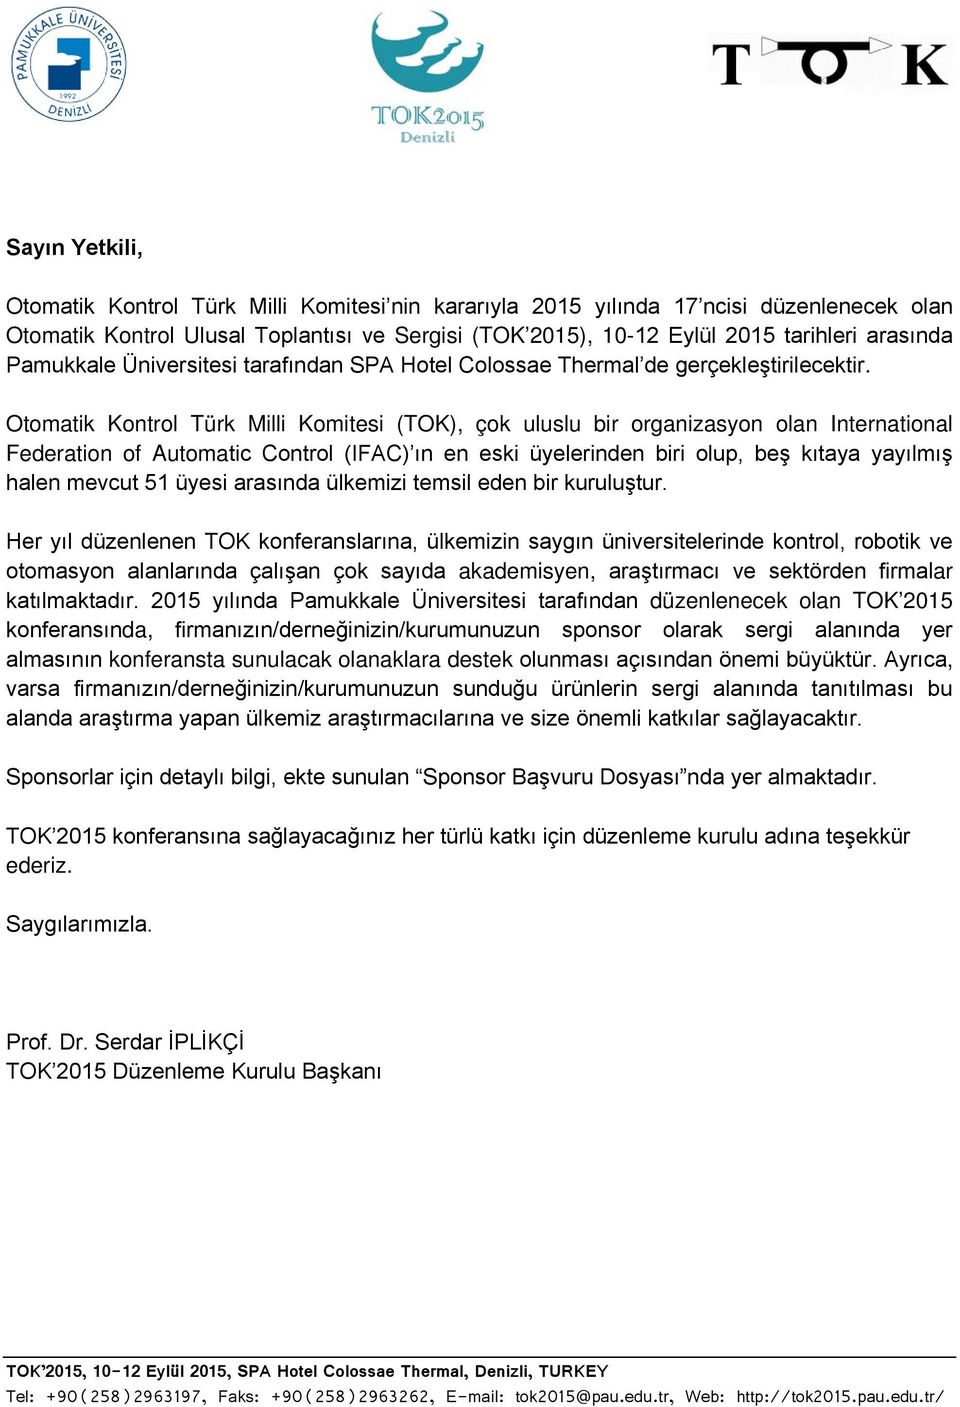 Otomatik Kontrol Türk Milli Komitesi (TOK), çok uluslu bir organizasyon olan International Federation of Automatic Control (IFAC) ın en eski üyelerinden biri olup, beş kıtaya yayılmış halen mevcut 51